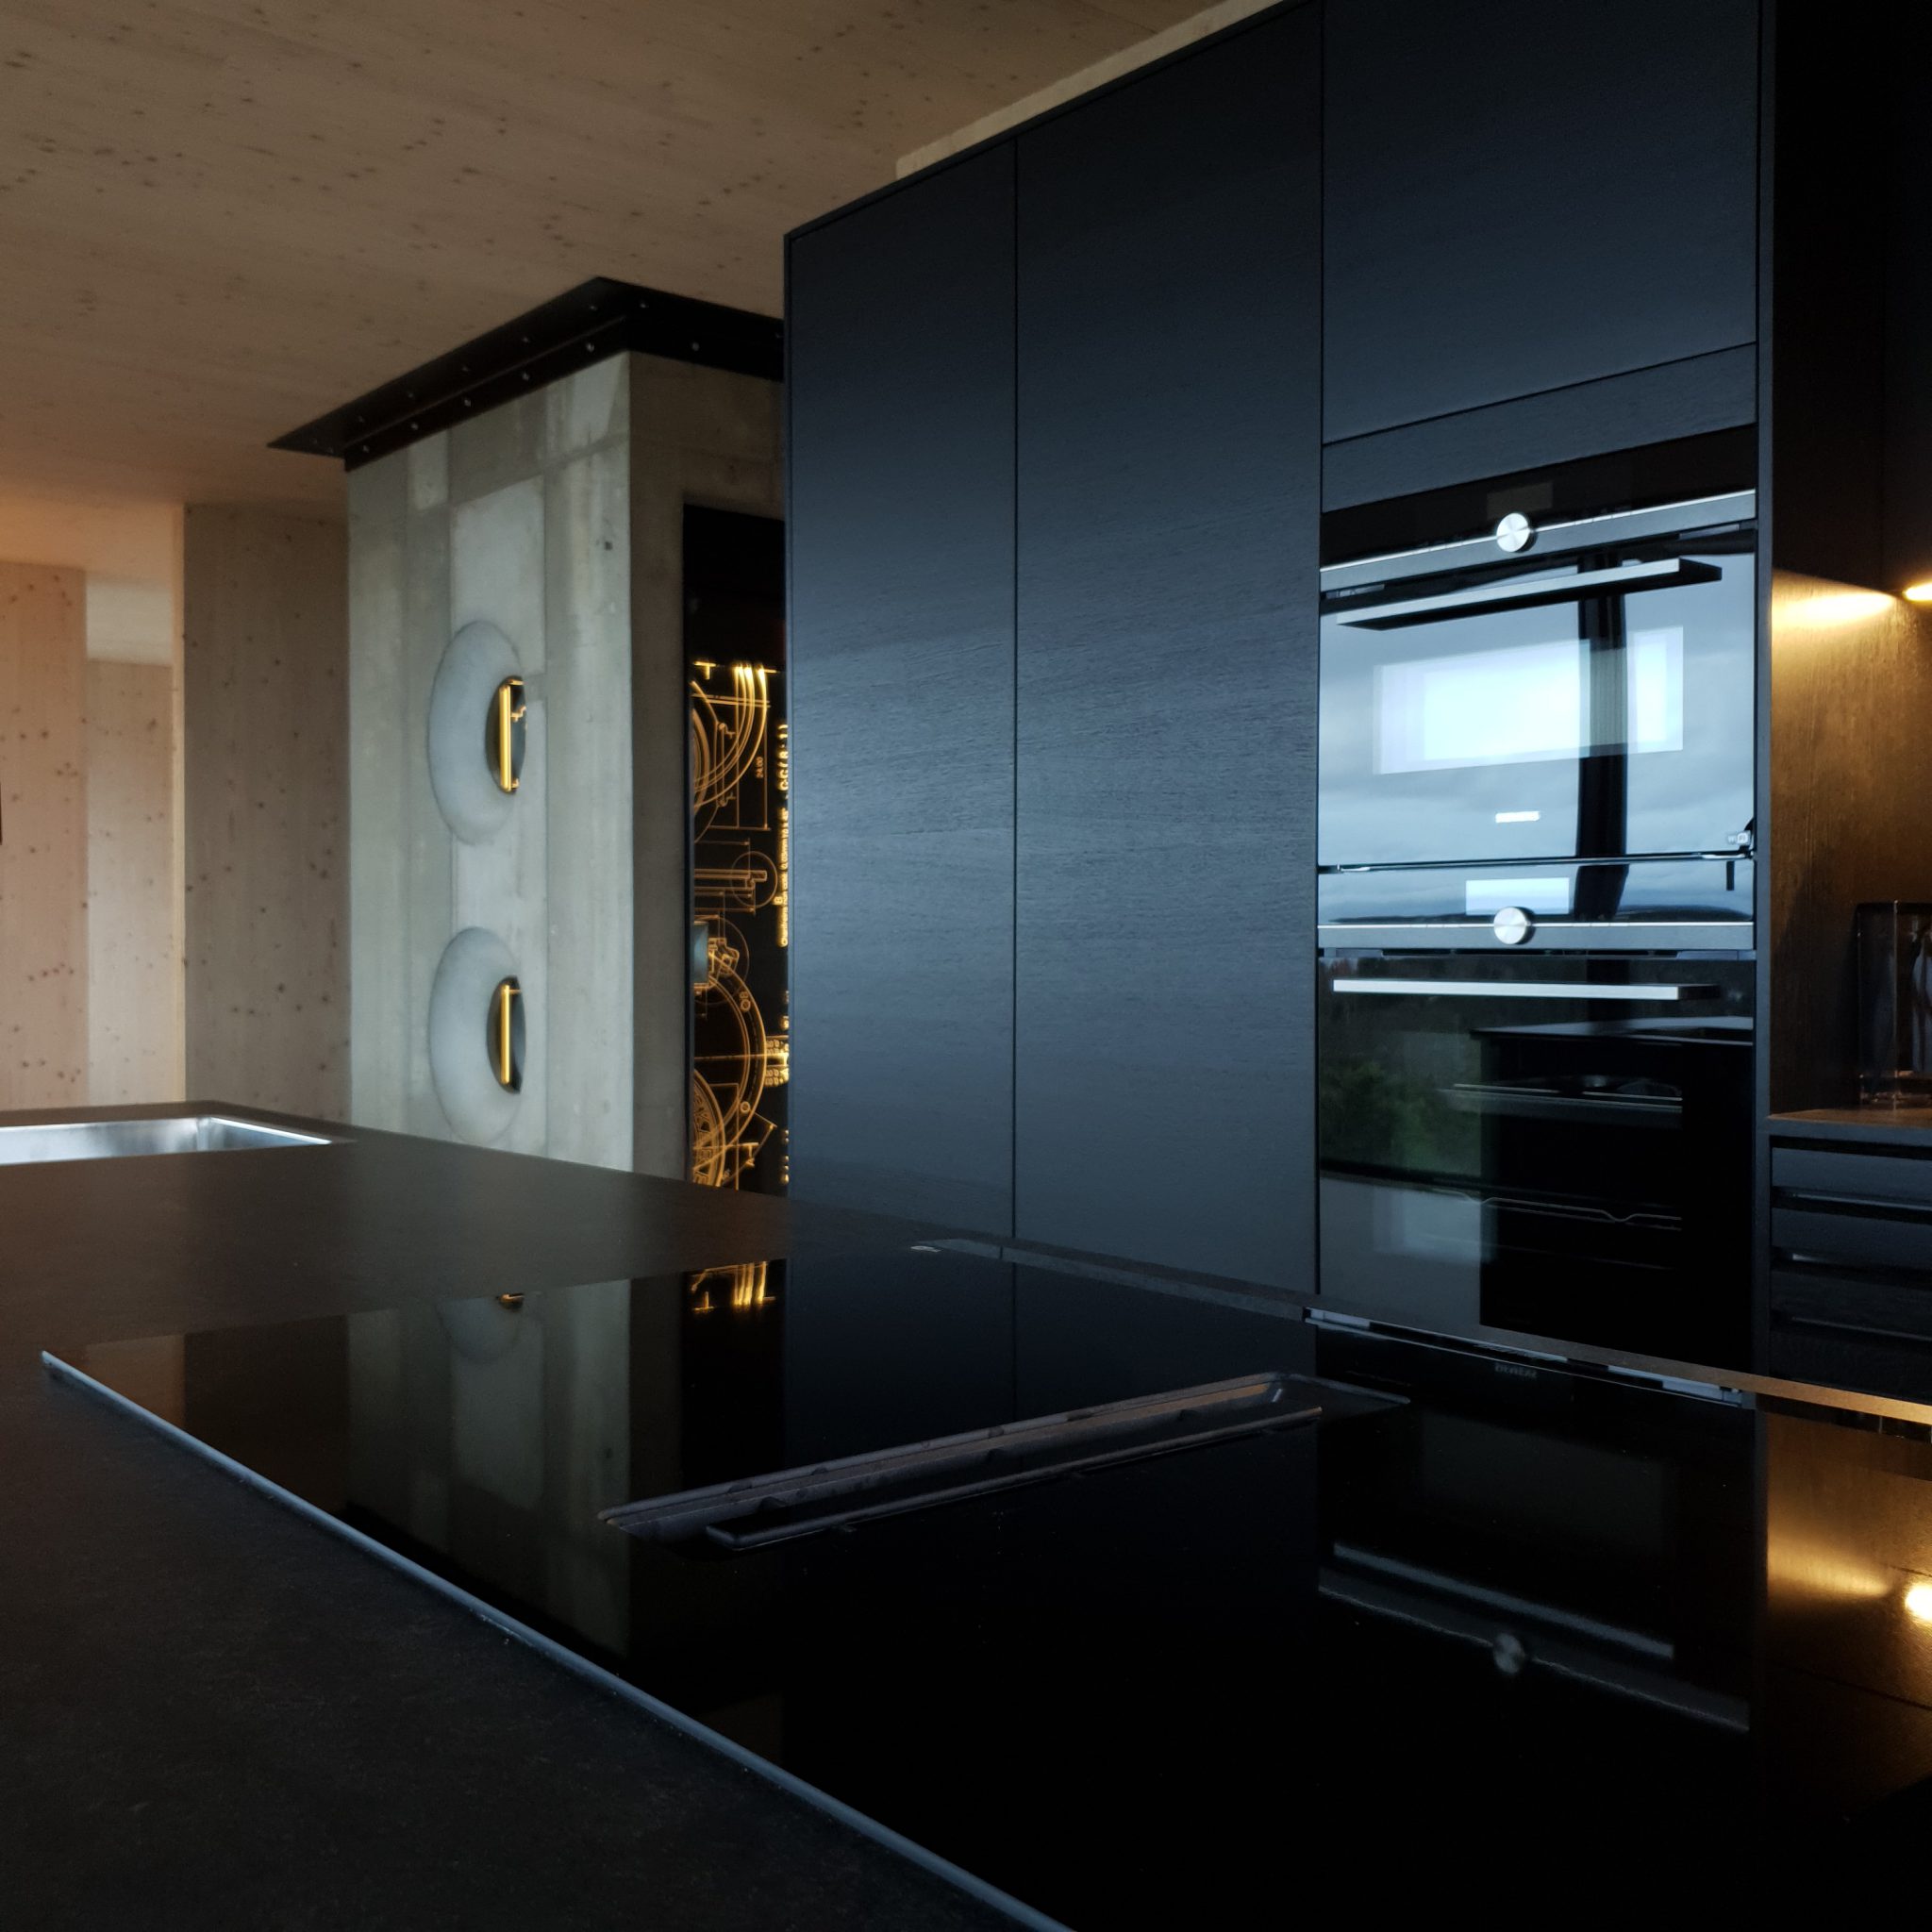 Grand designs, Villa Alsvik, kitchen with view lift